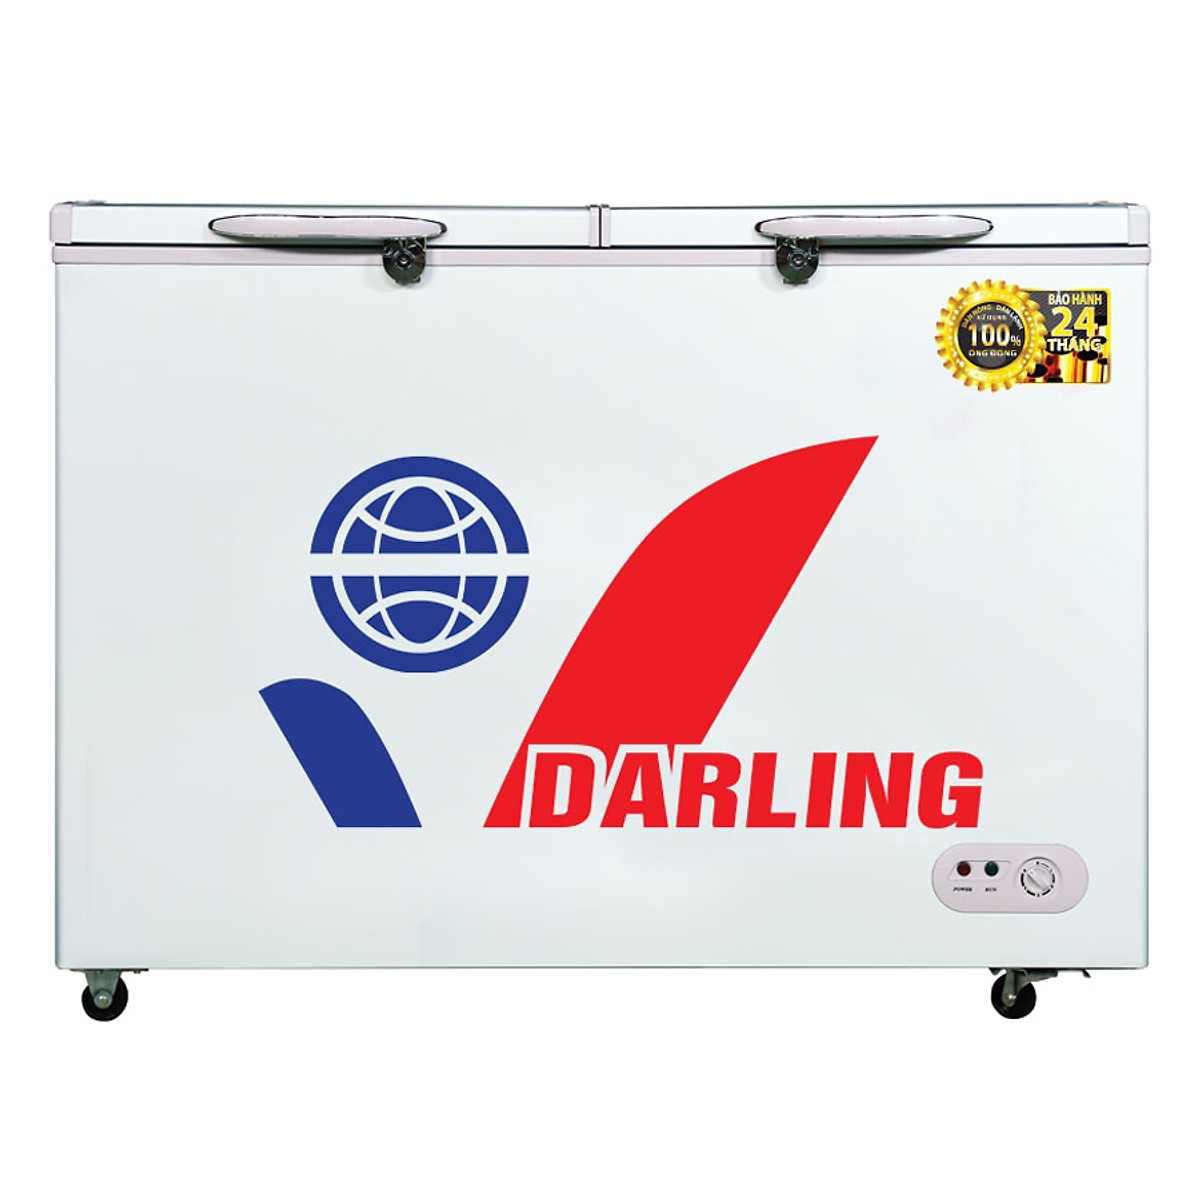 tủ đông darling dmf-6899wx 530 lít